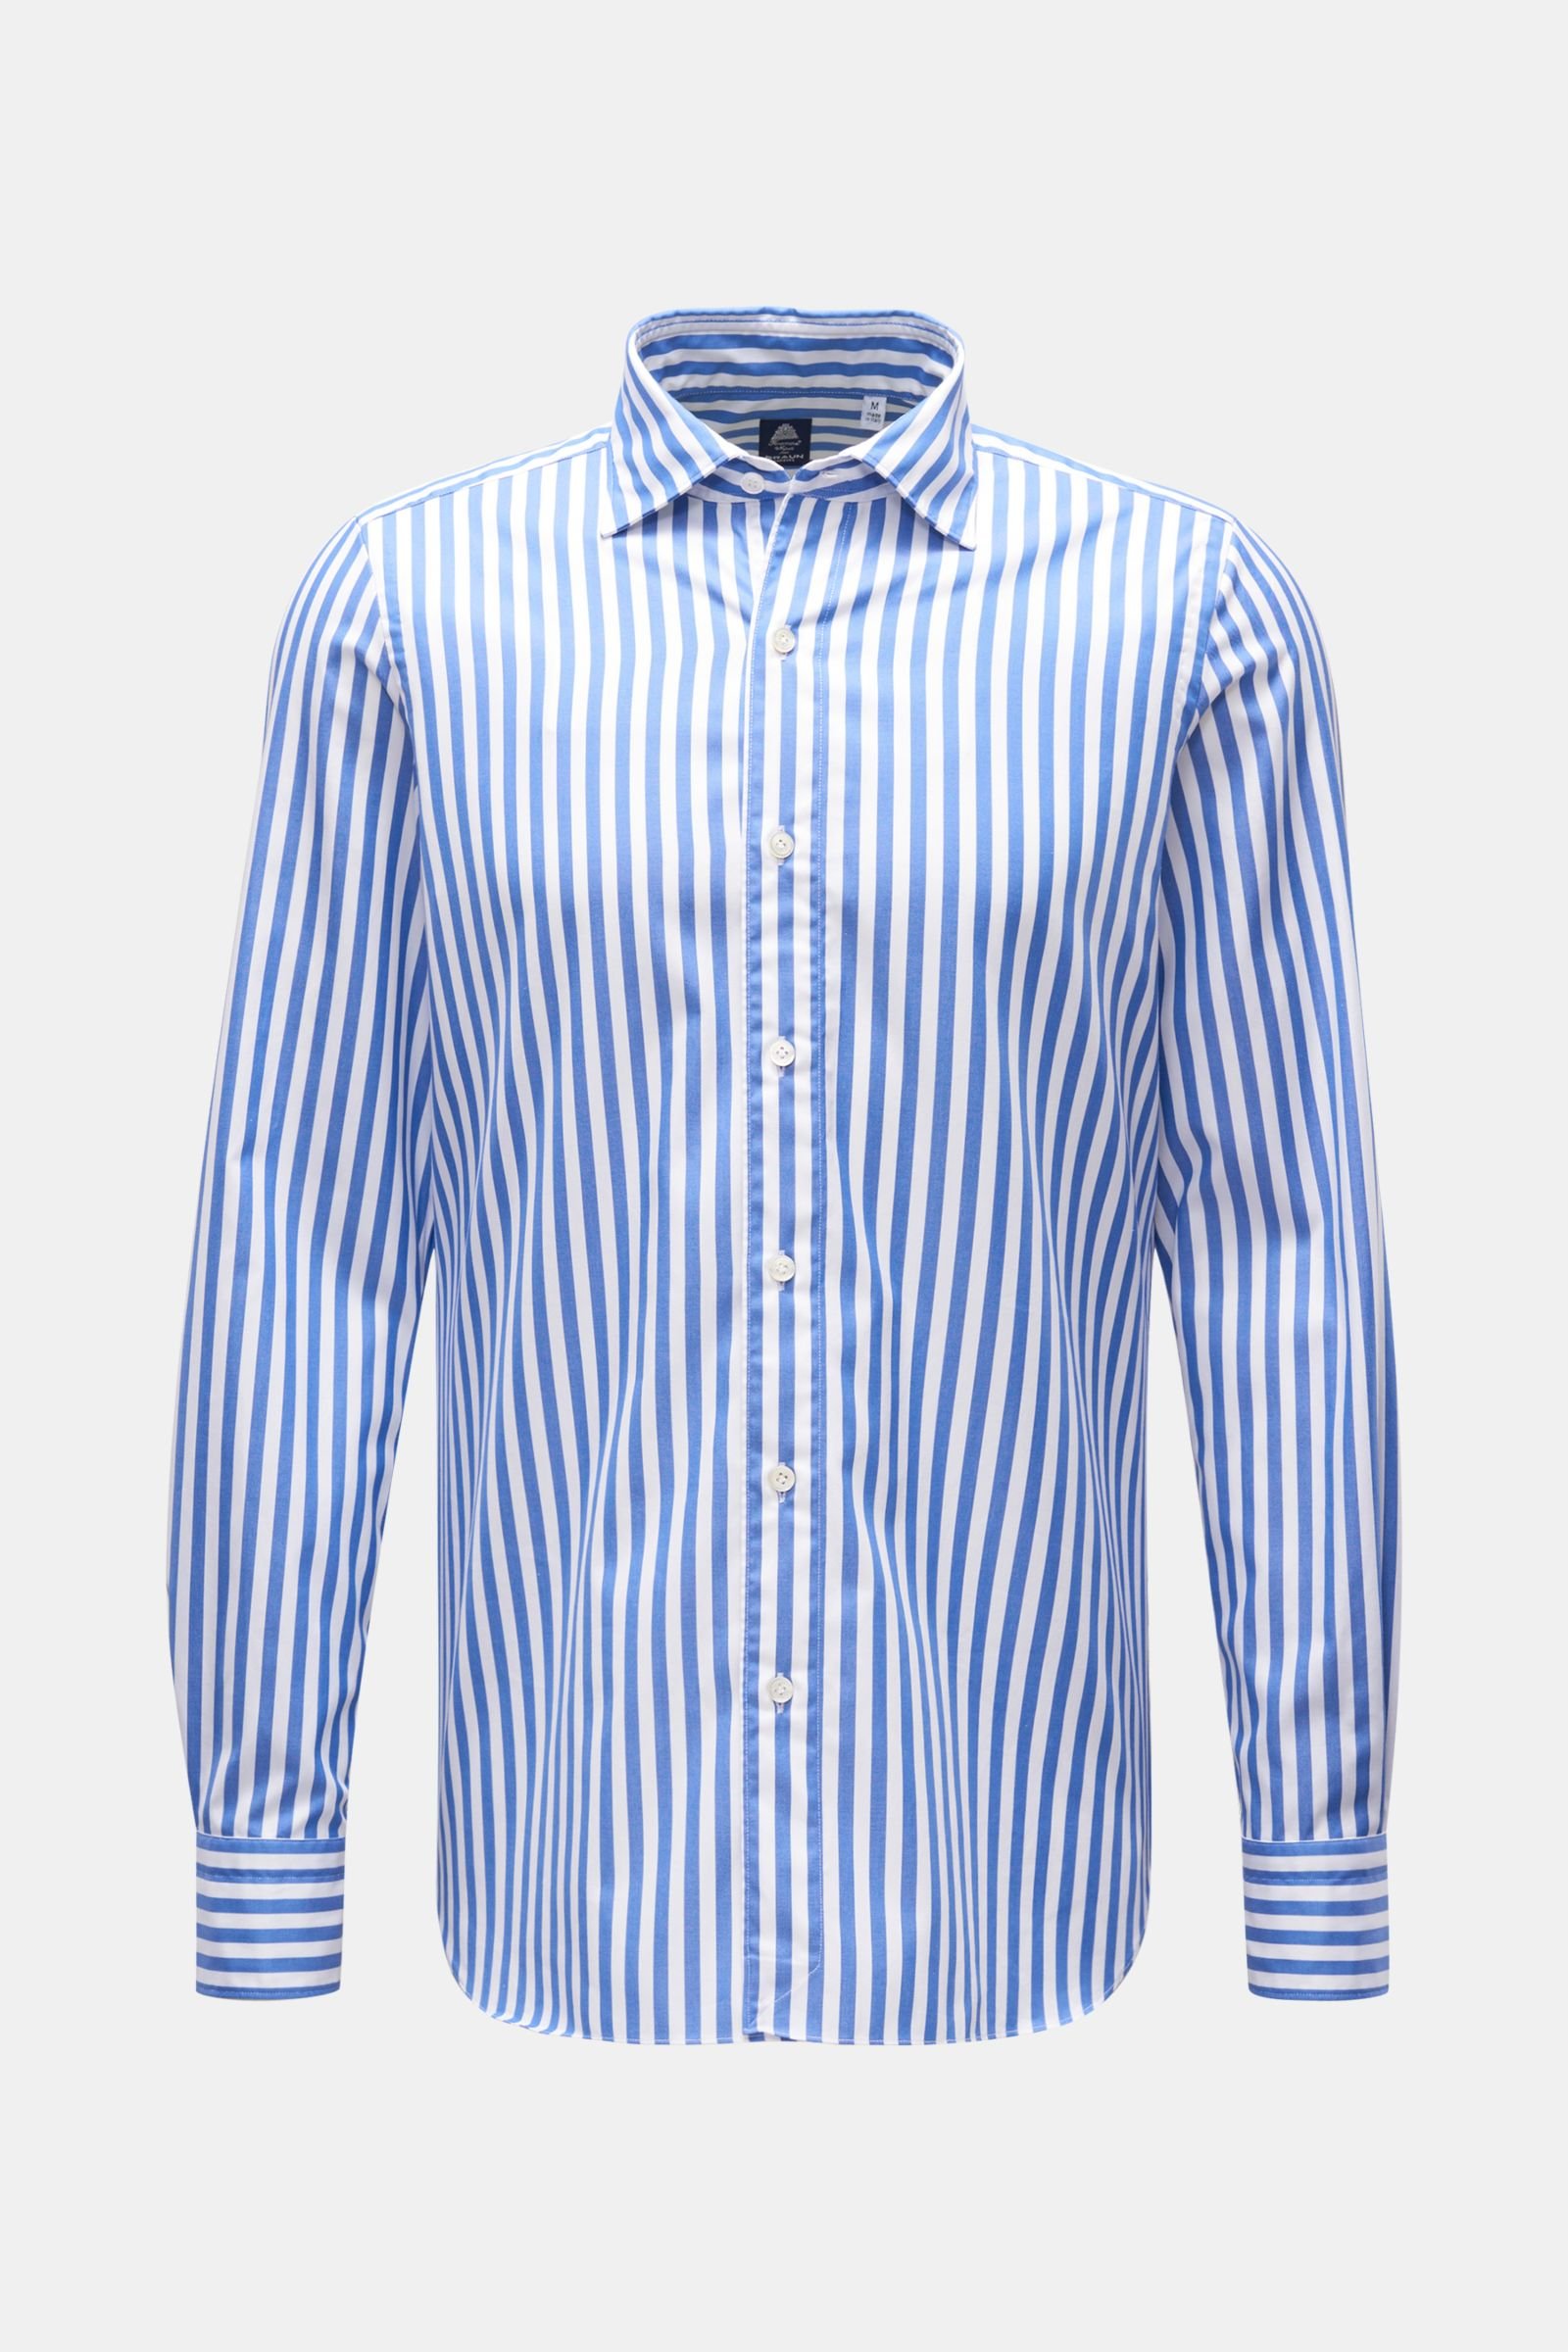 Casual shirt 'Luigi Gaeta' shark collar blue/white striped